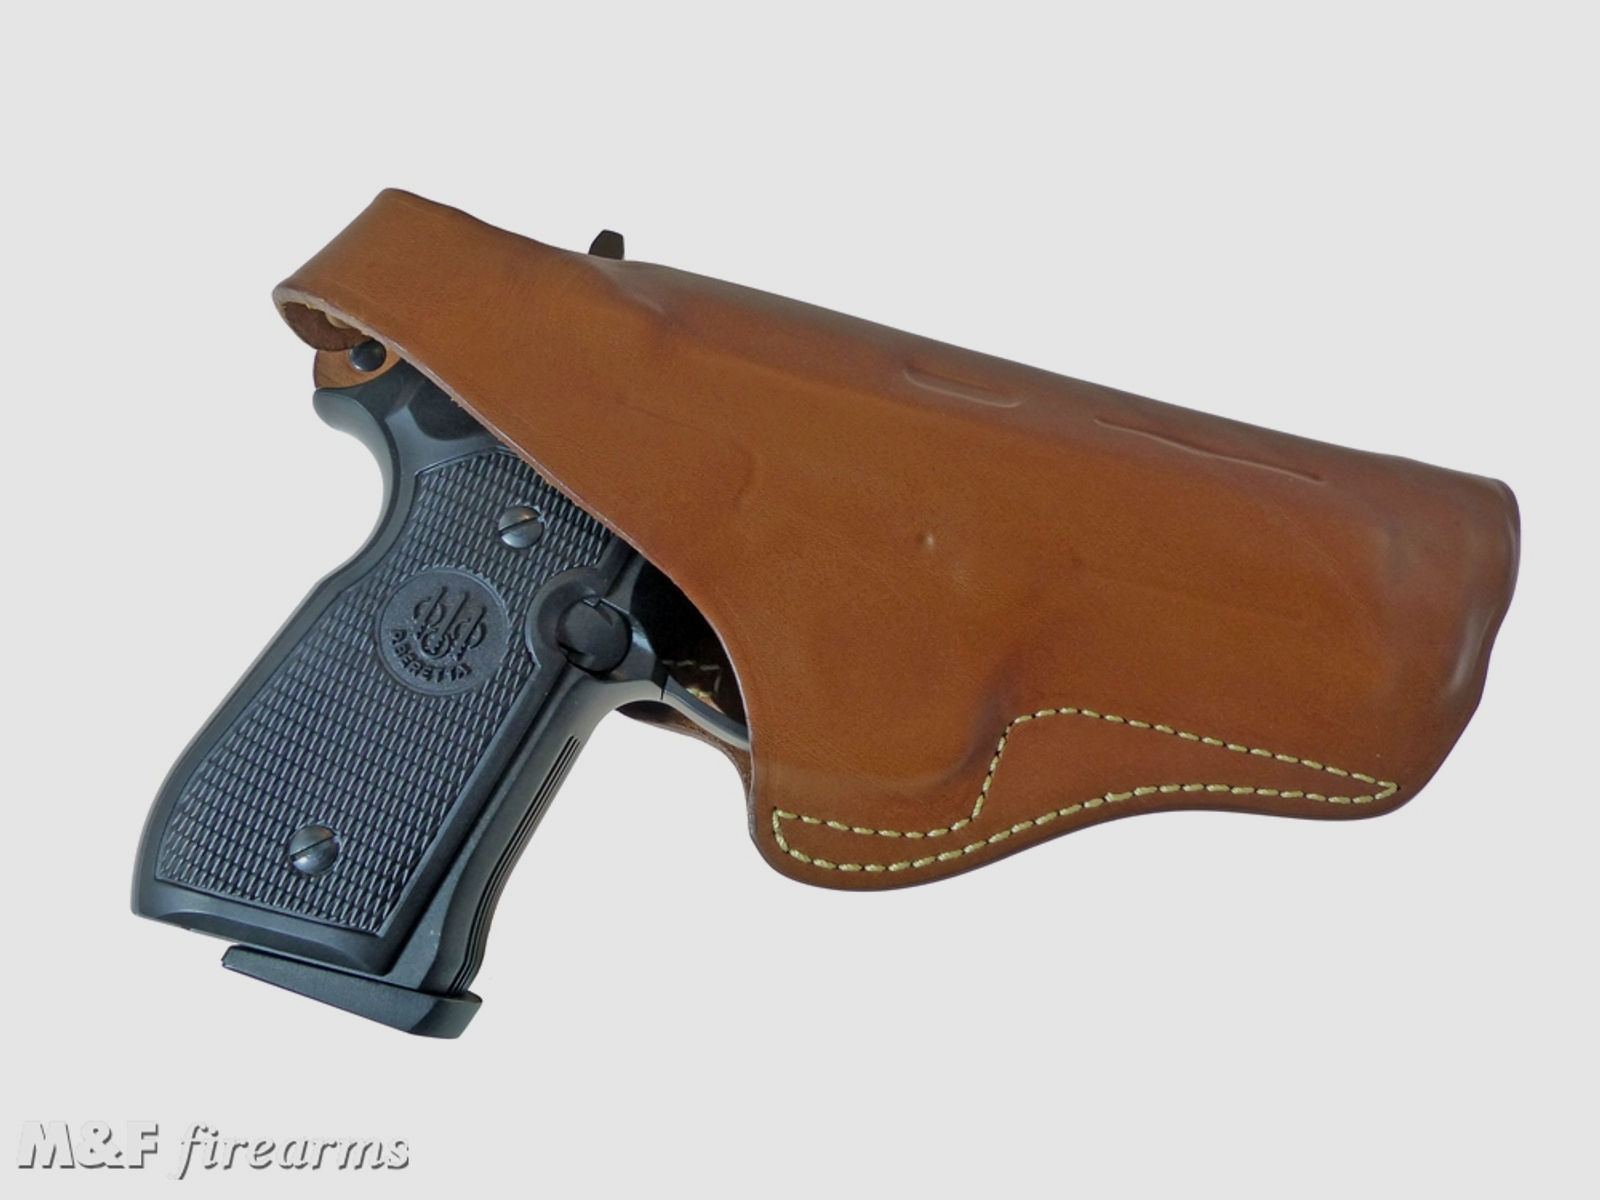 RADAR Lederholster für Beretta Pistole 92F passend auch für Luftdruck- Airsoft- und Schreckschussvarianten